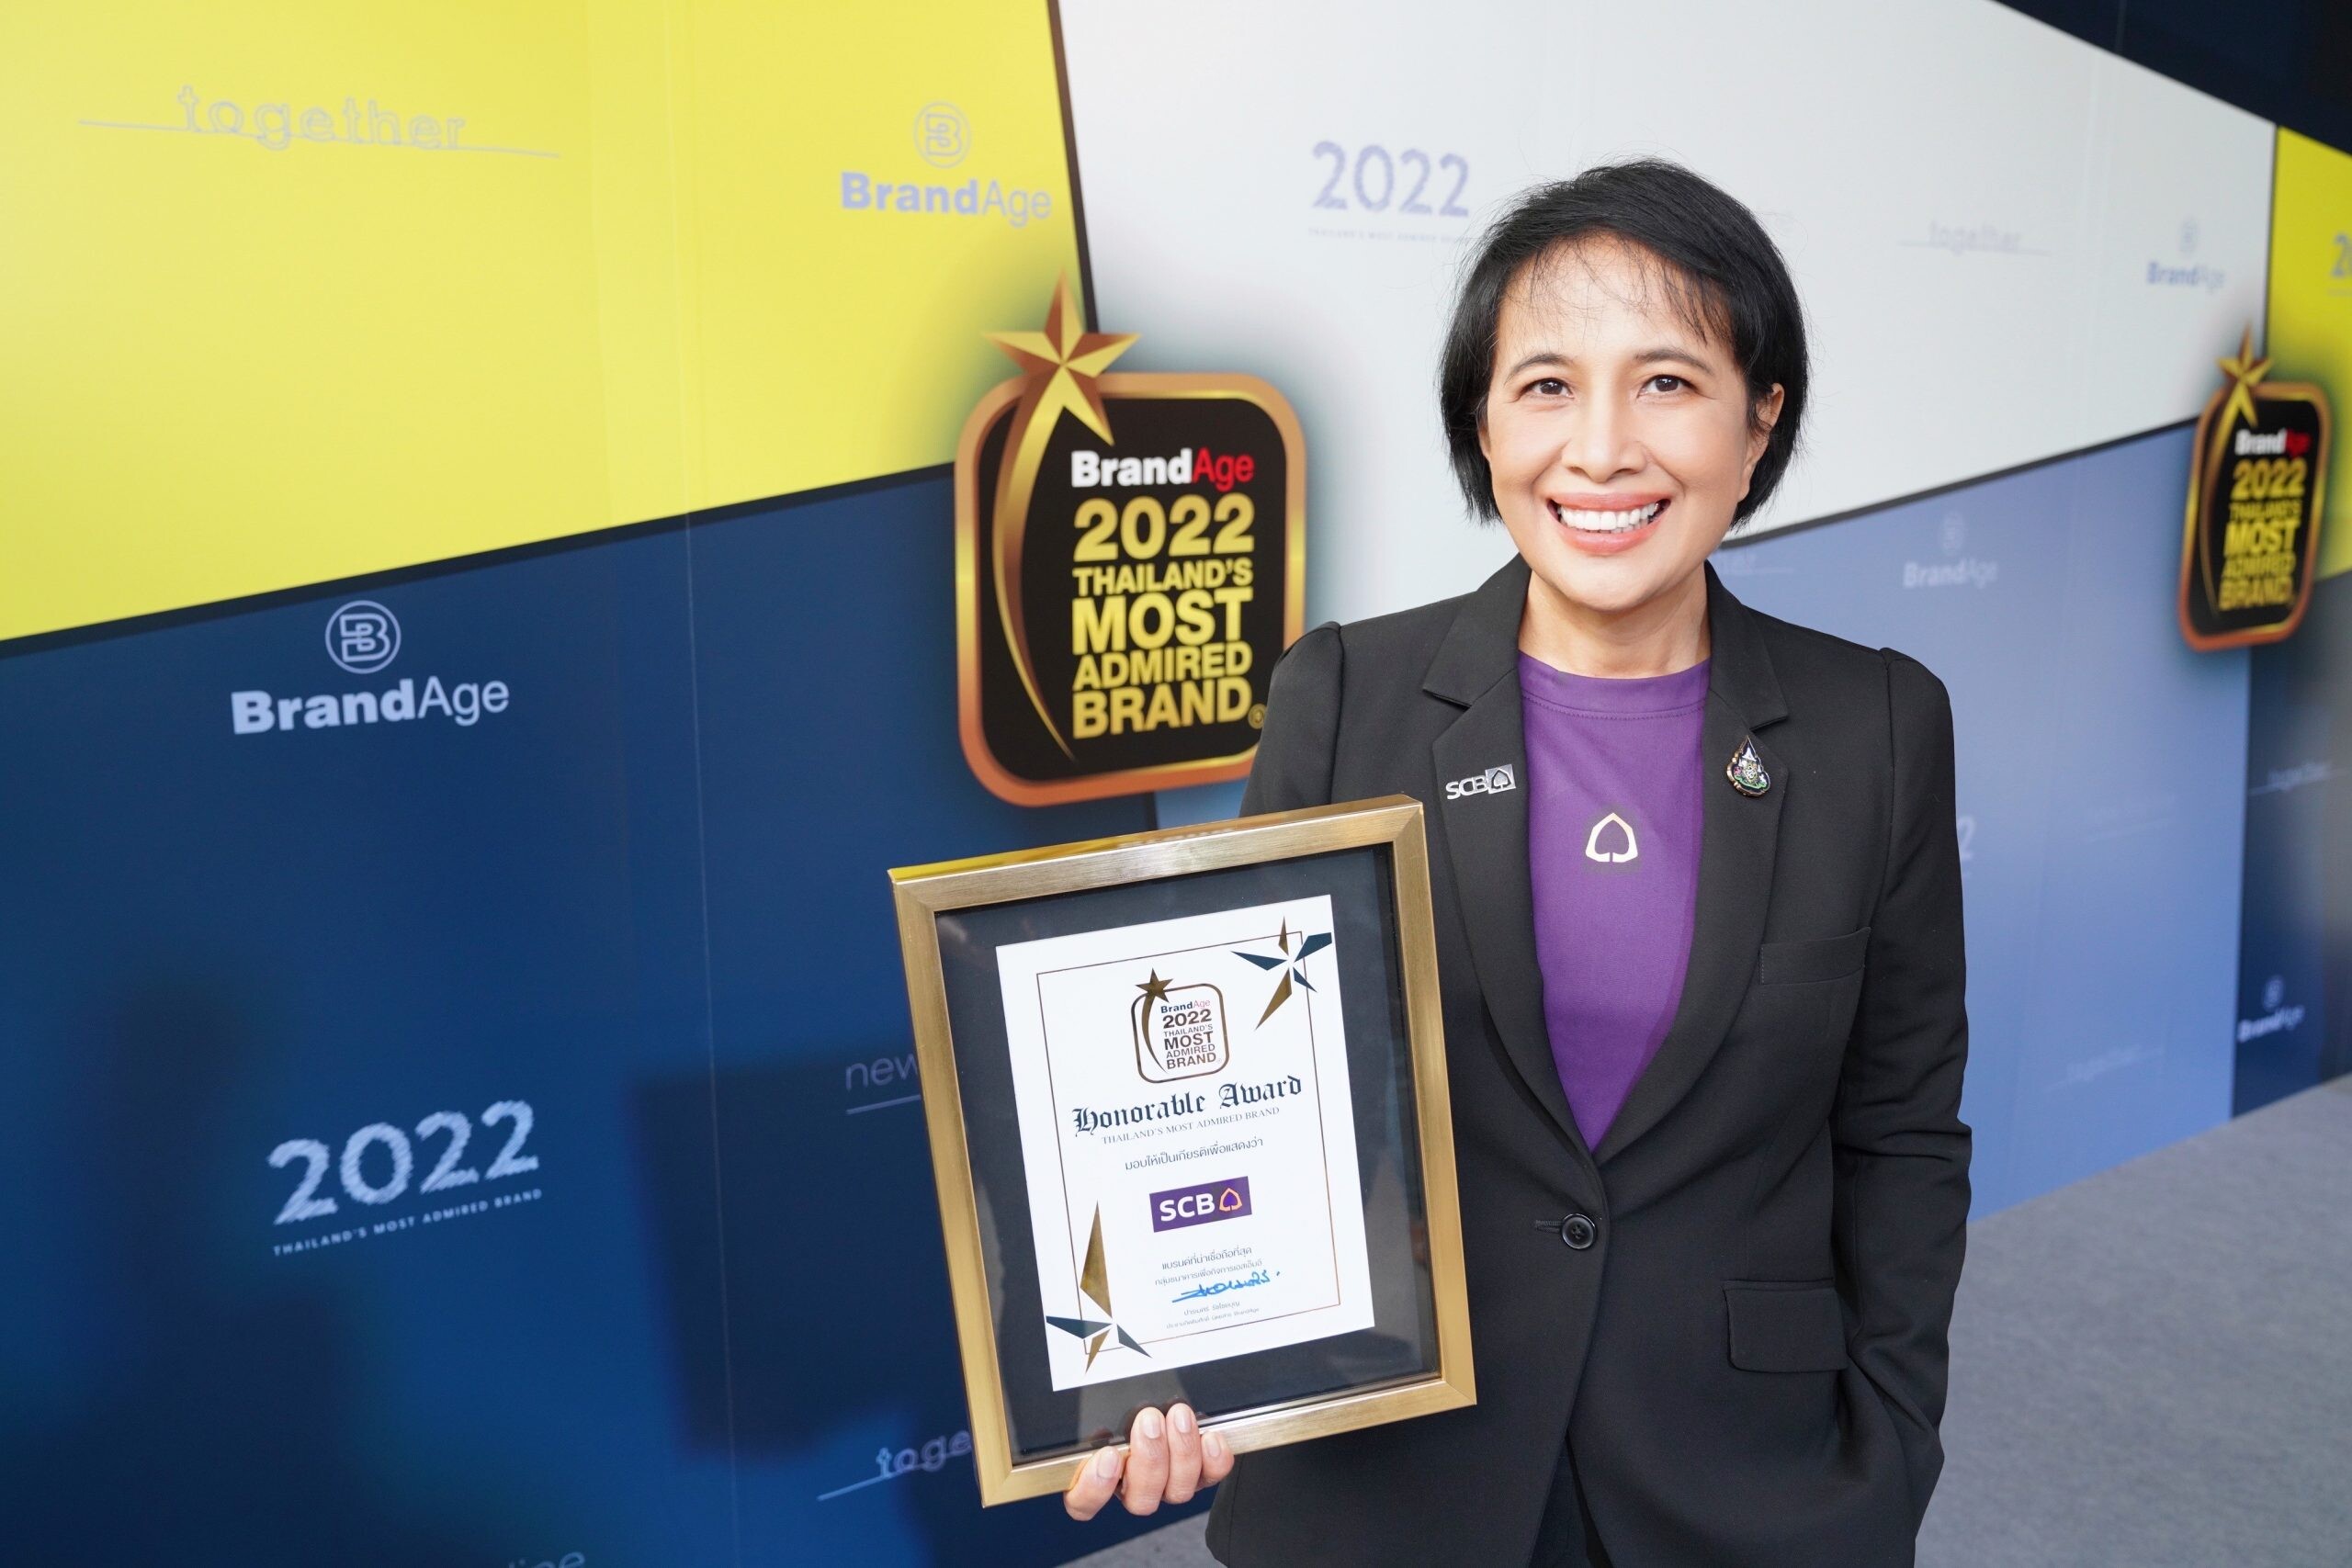 ไทยพาณิชย์ที่หนึ่งในใจเอสเอ็มอีไทย 3 ปีซ้อน รับรางวัลธนาคารเพื่อกิจการเอสเอ็มอี ในงาน 2022 Thailand's Most Admired Brand โดยนิตยสารแบรนด์เอจ